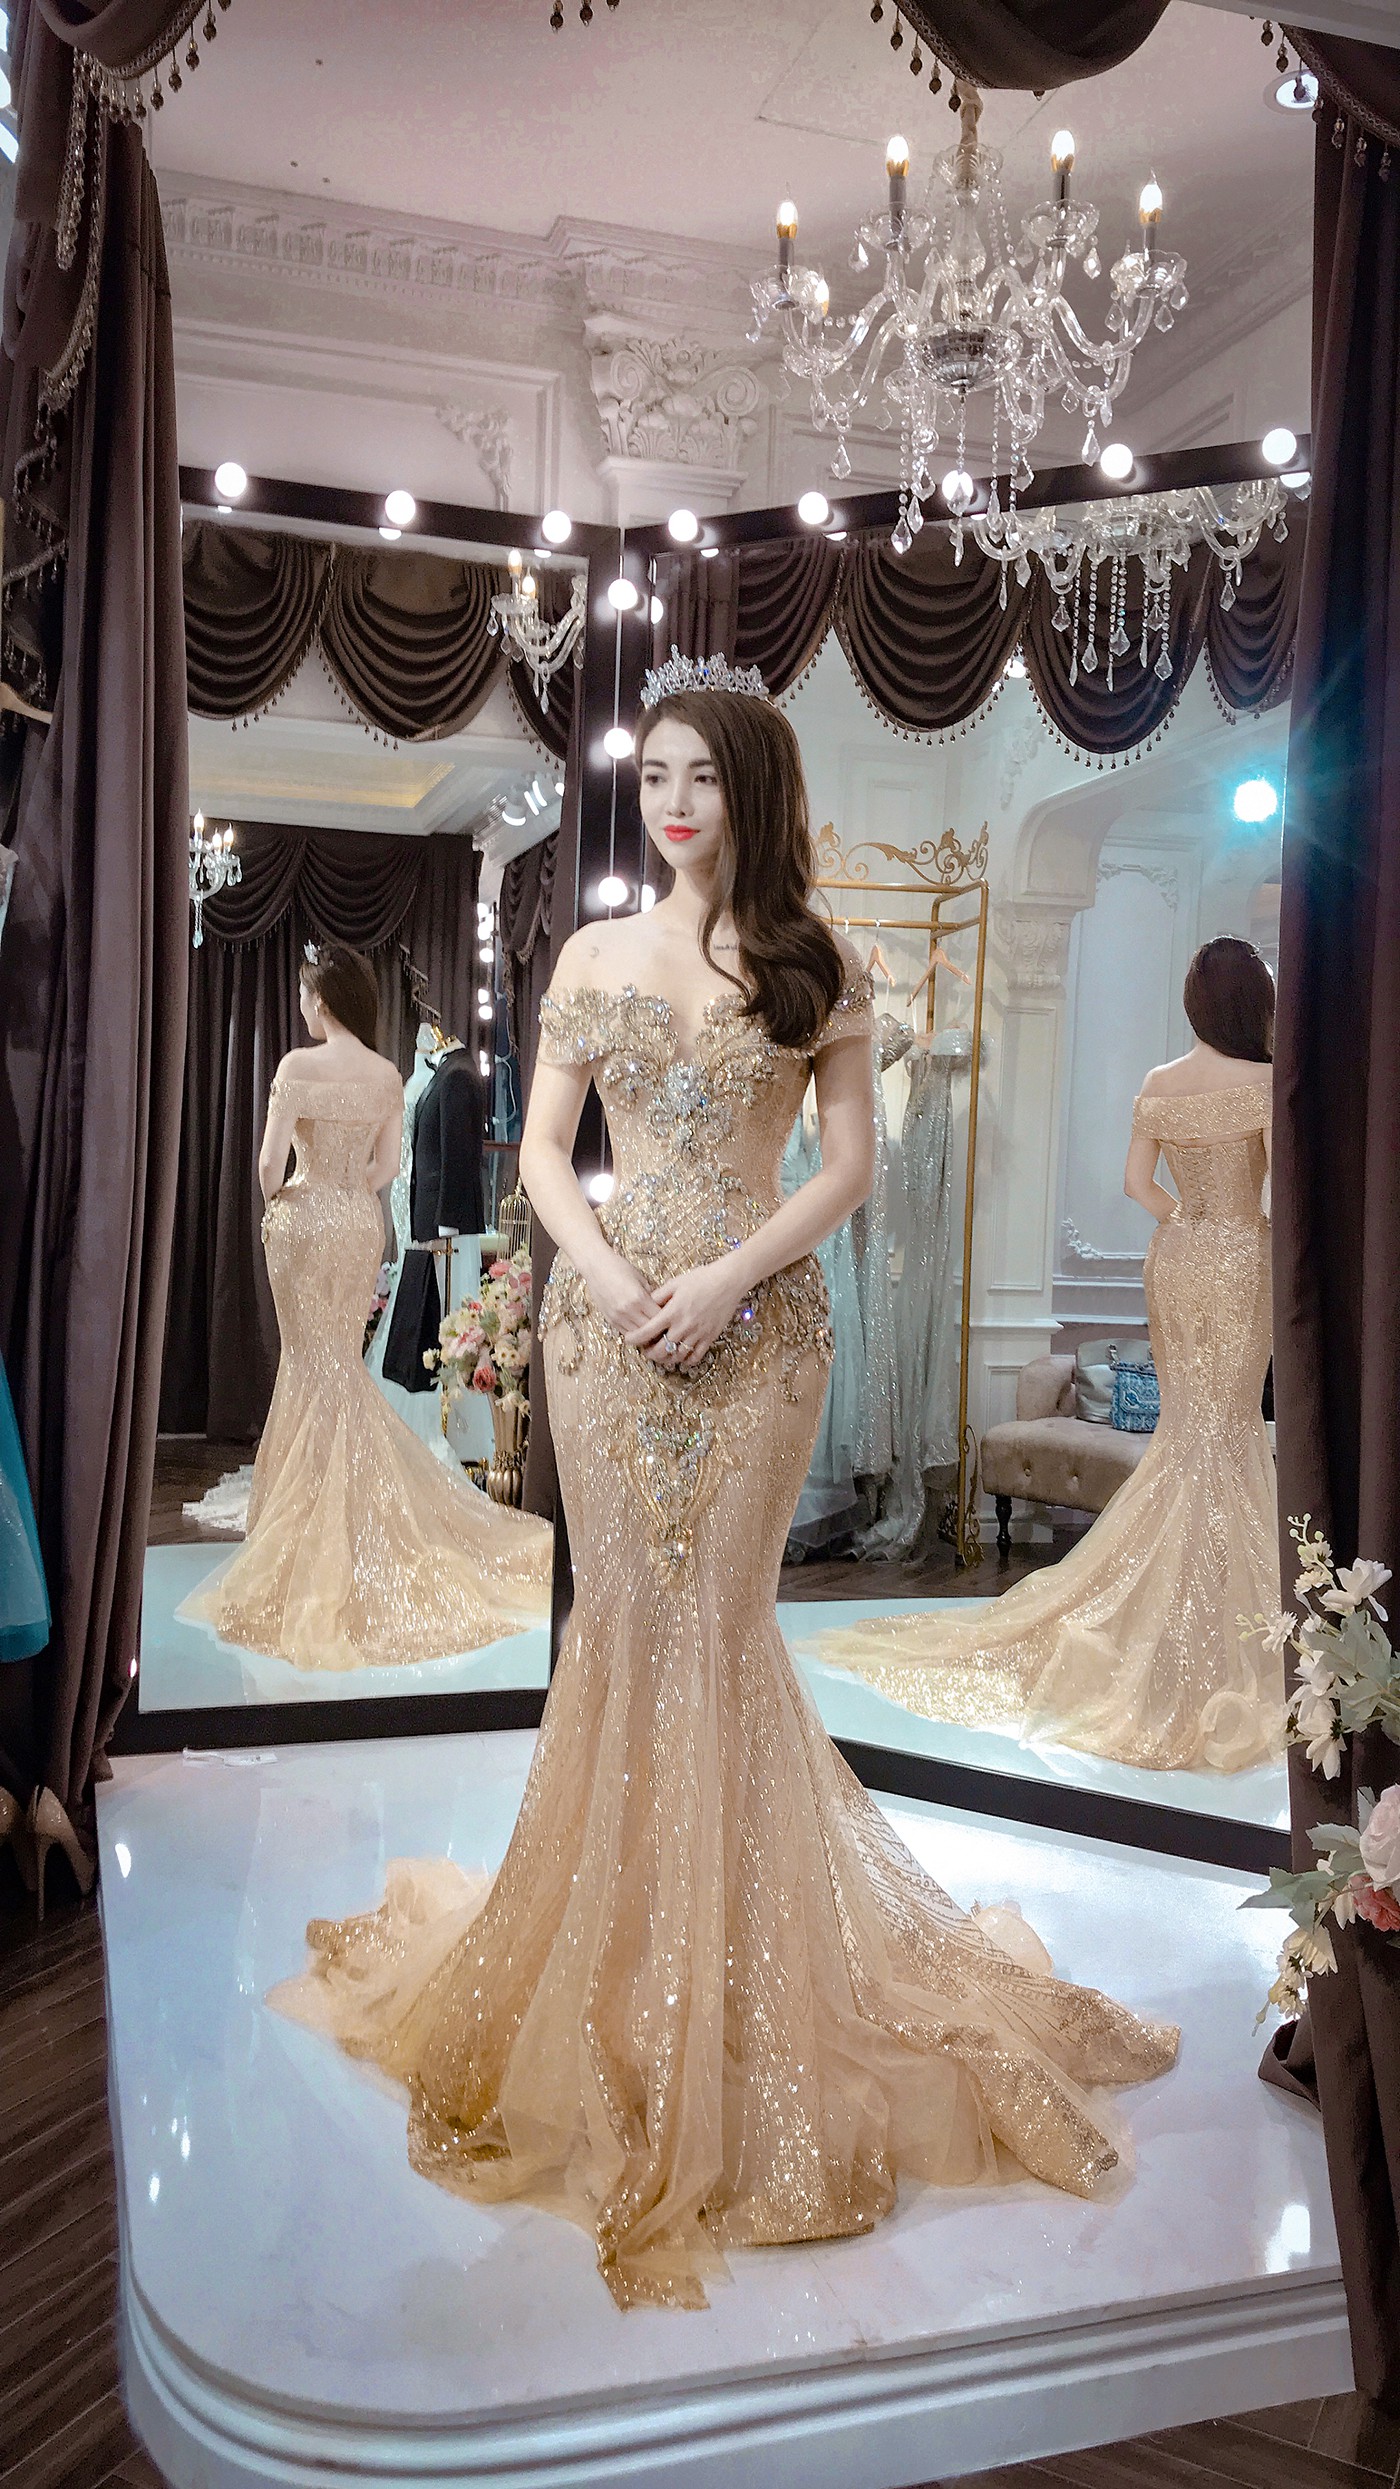 Lộng lẫy và nổi bật trong ngày cưới với váy cô dâu thương hiệu Việt